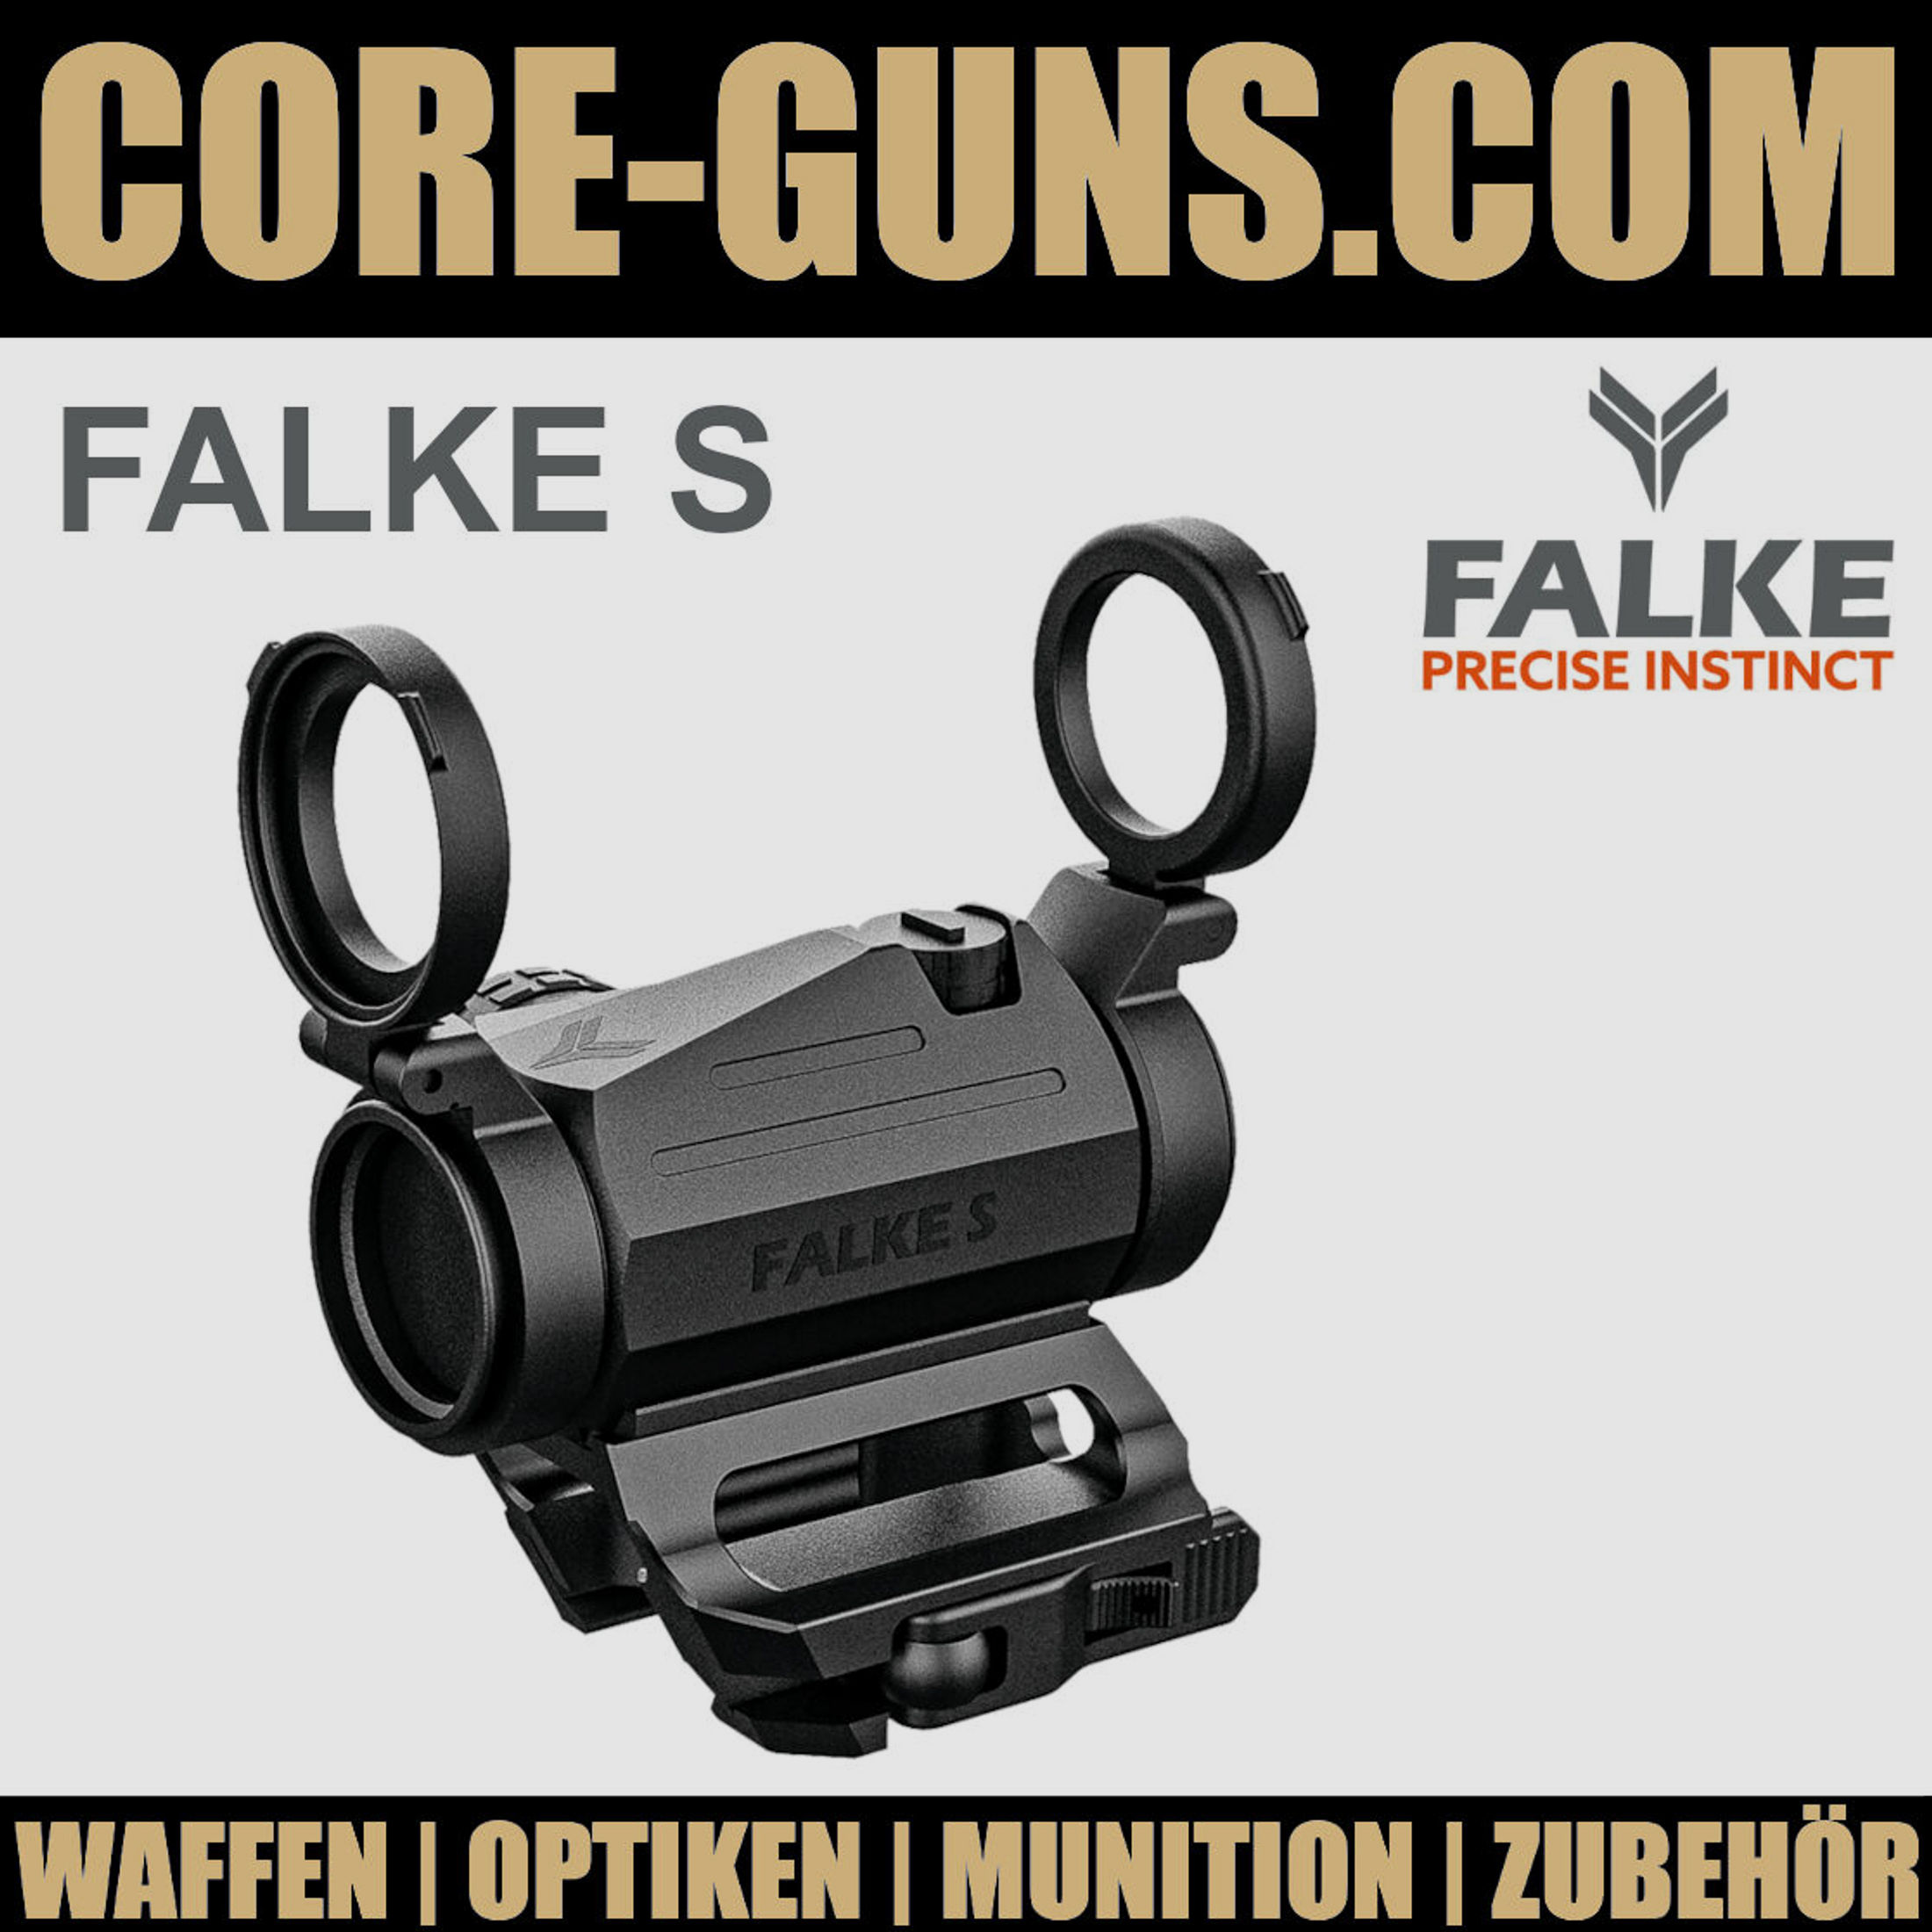 Falke S / Falke Rotpunkt - Sommerangebot  2022 - Sonderangebot	 Falke Germany Precise Instinct FALKE S SONDERPREIS